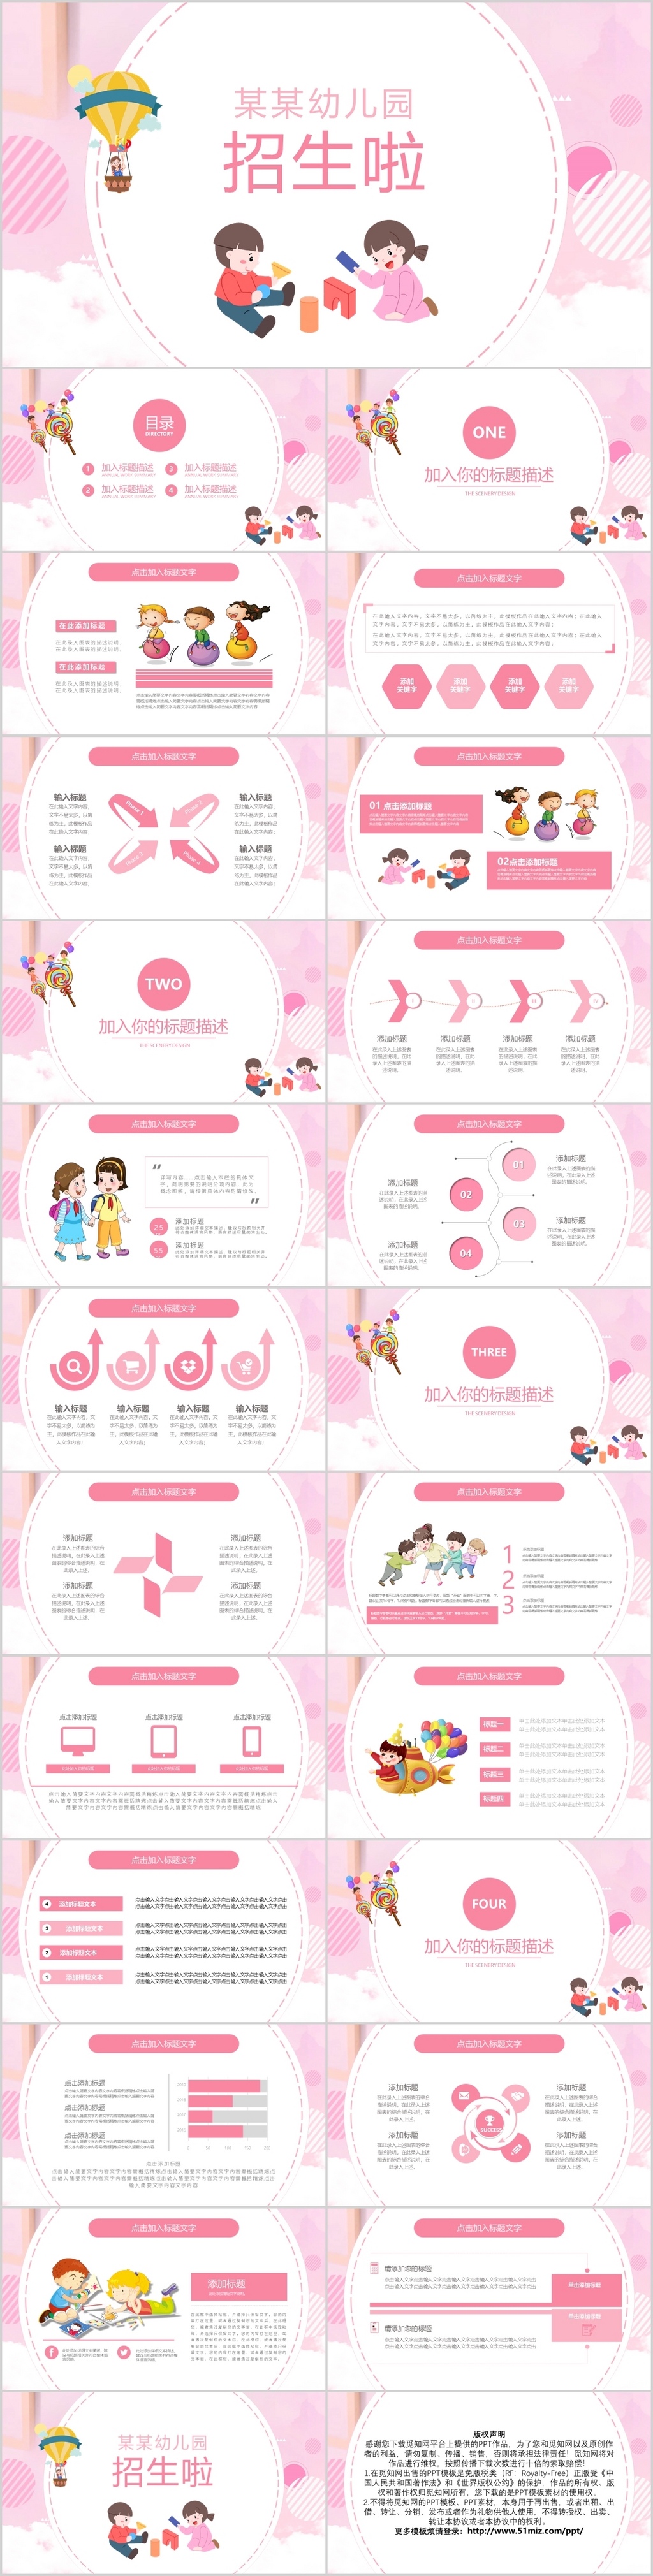 粉色系卡通幼儿园招生啦PPT模板宣传PPT动态PPT